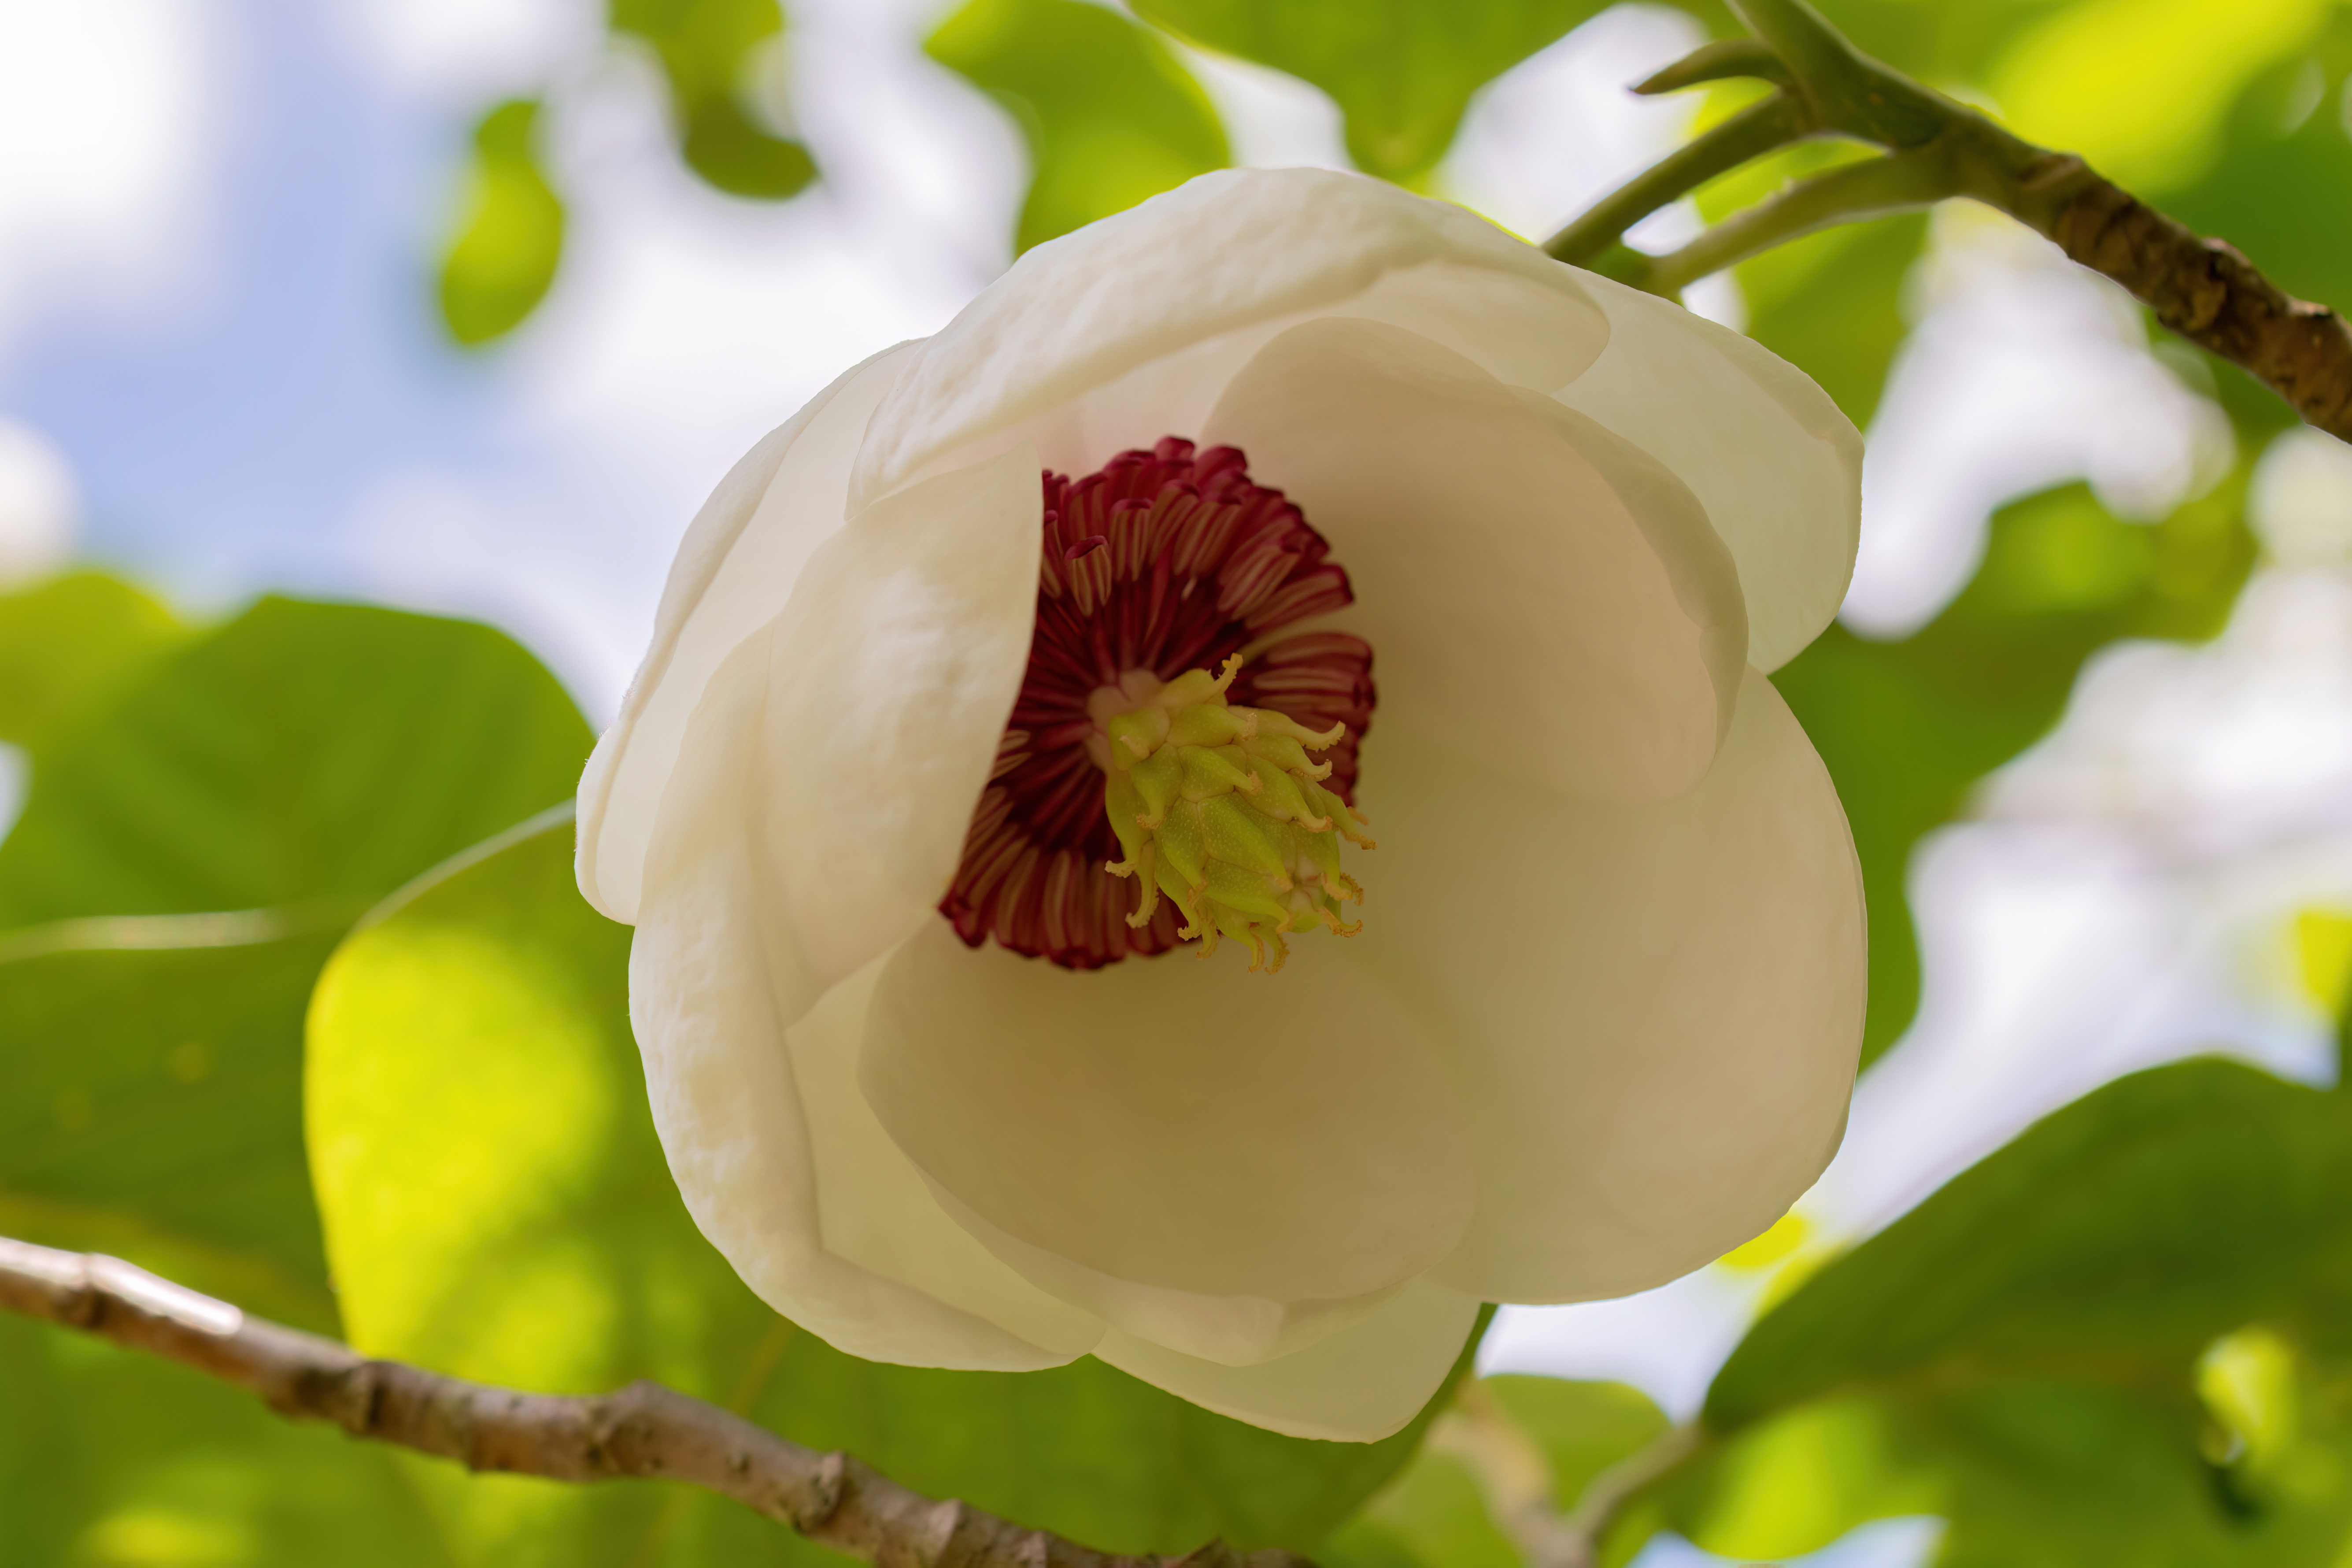 Cand se planteaza magnolia din ghiveci in gradina. Sfaturi pentru ingrijirea plantei